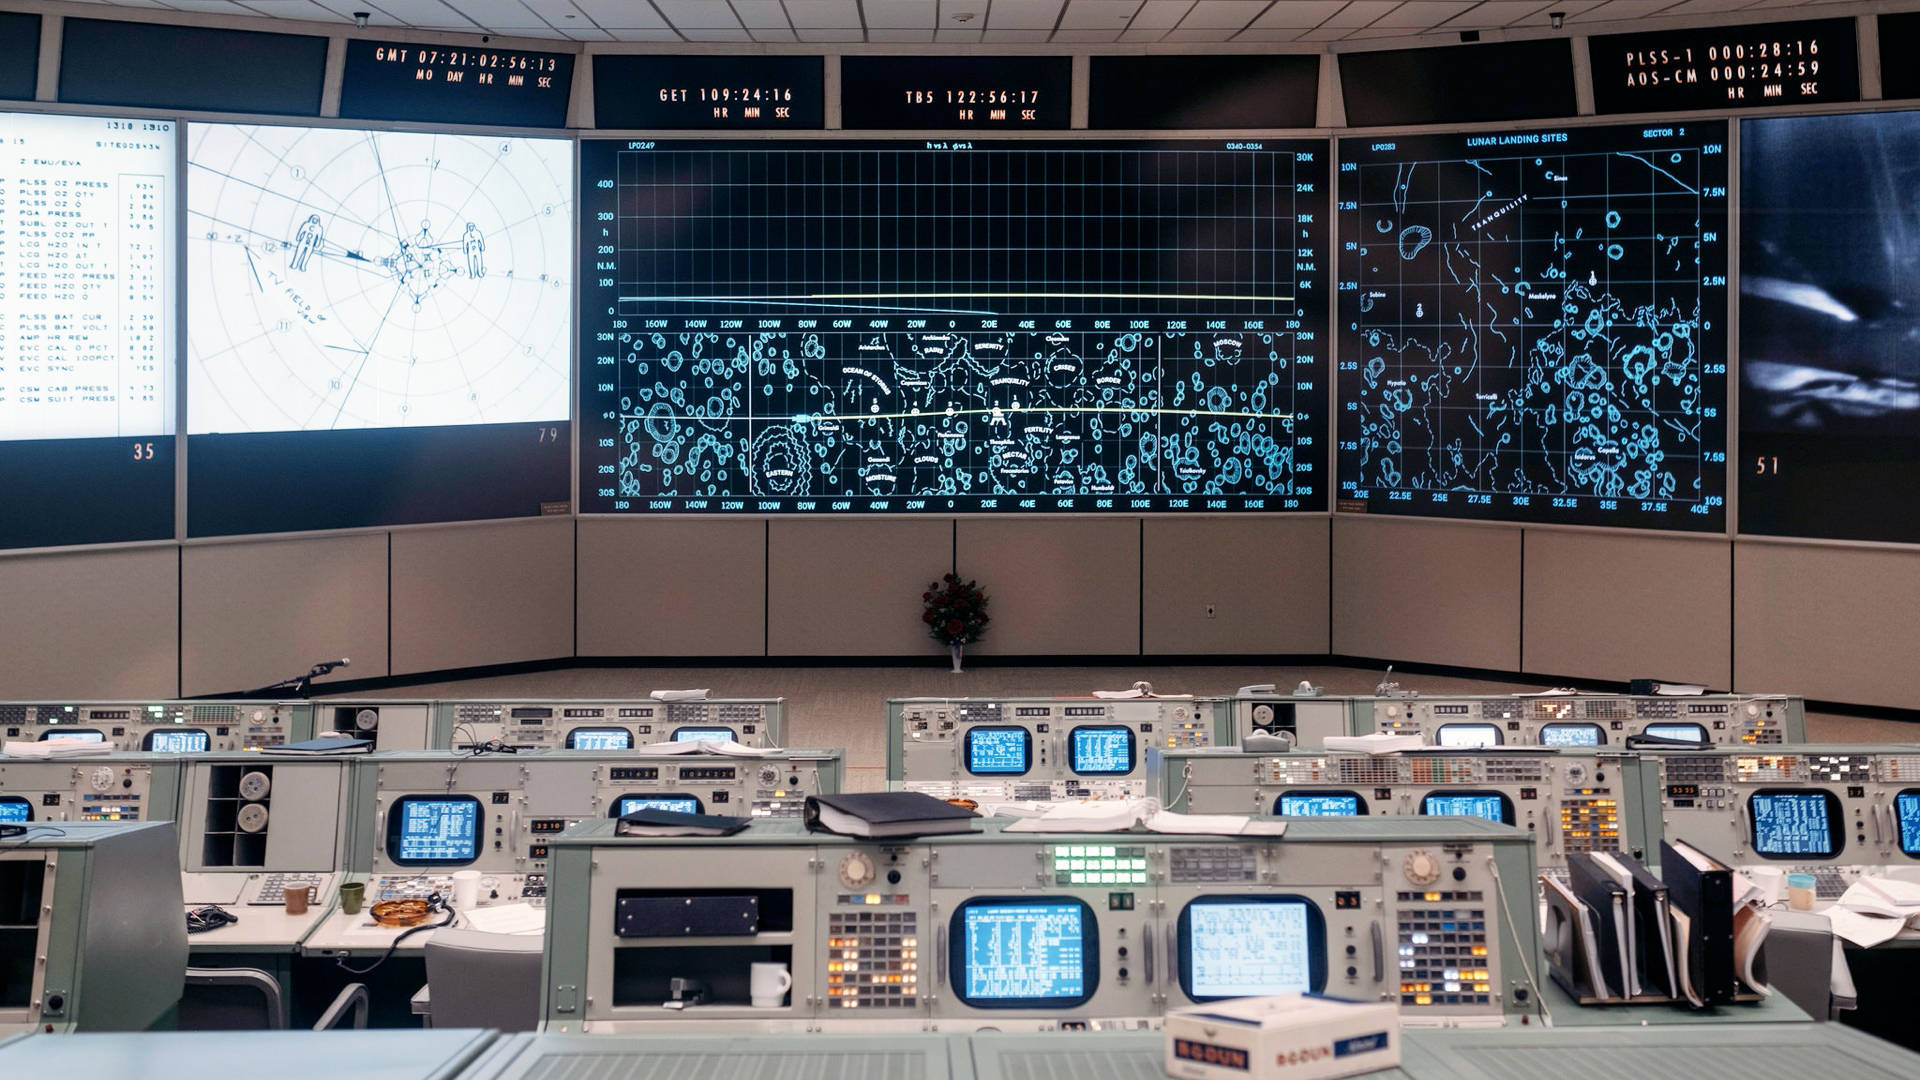 NASA Houston Control Center Wallpaper